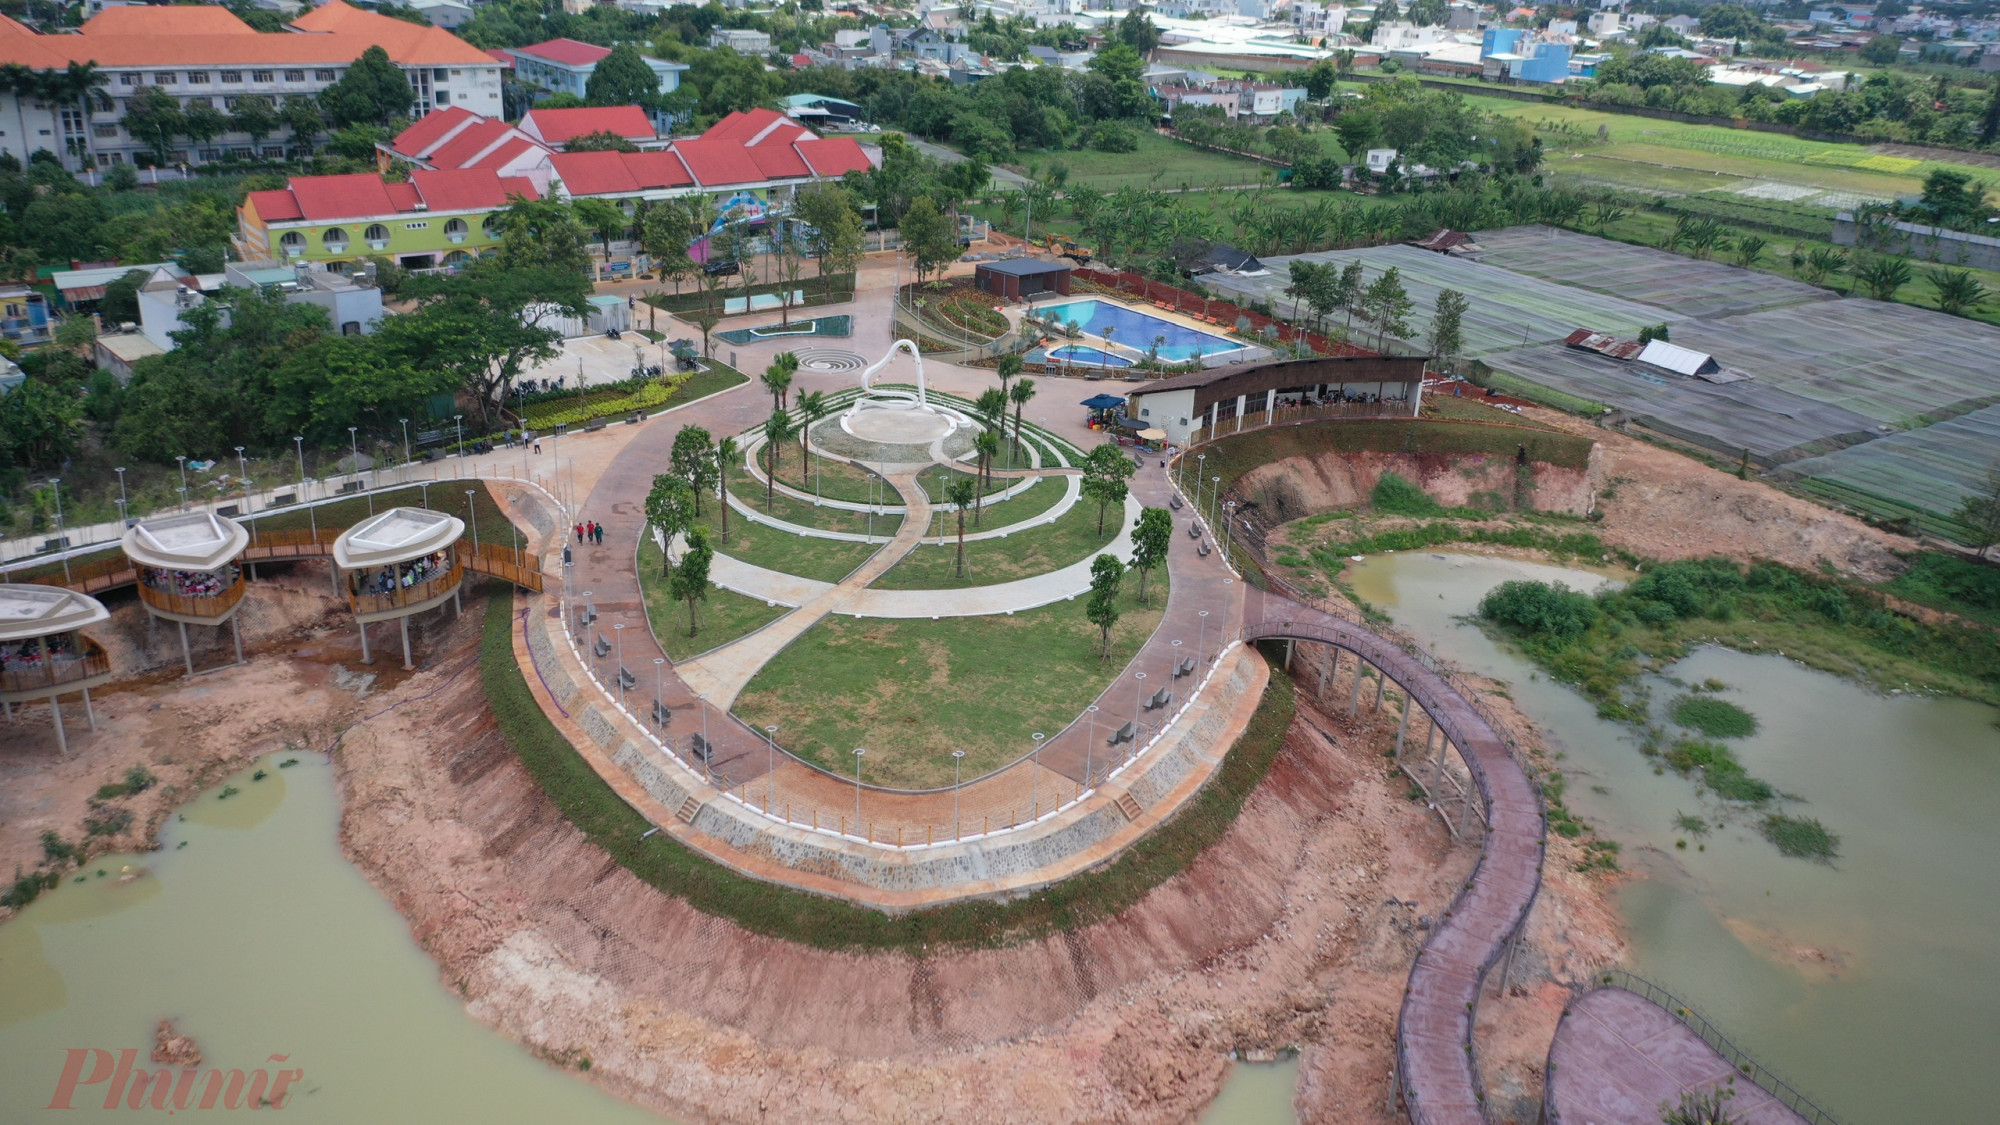 Đây là công viên du lịch sinh thái đầu tiên của huyện Hóc Môn được khởi công cuối năm 2022 với tiến độ triển khai khẩn trương trong vòng 6 tháng, tổng mức đầu tư 70 tỷ đồng từ nguồn ngân sách tiết kiệm huyện.